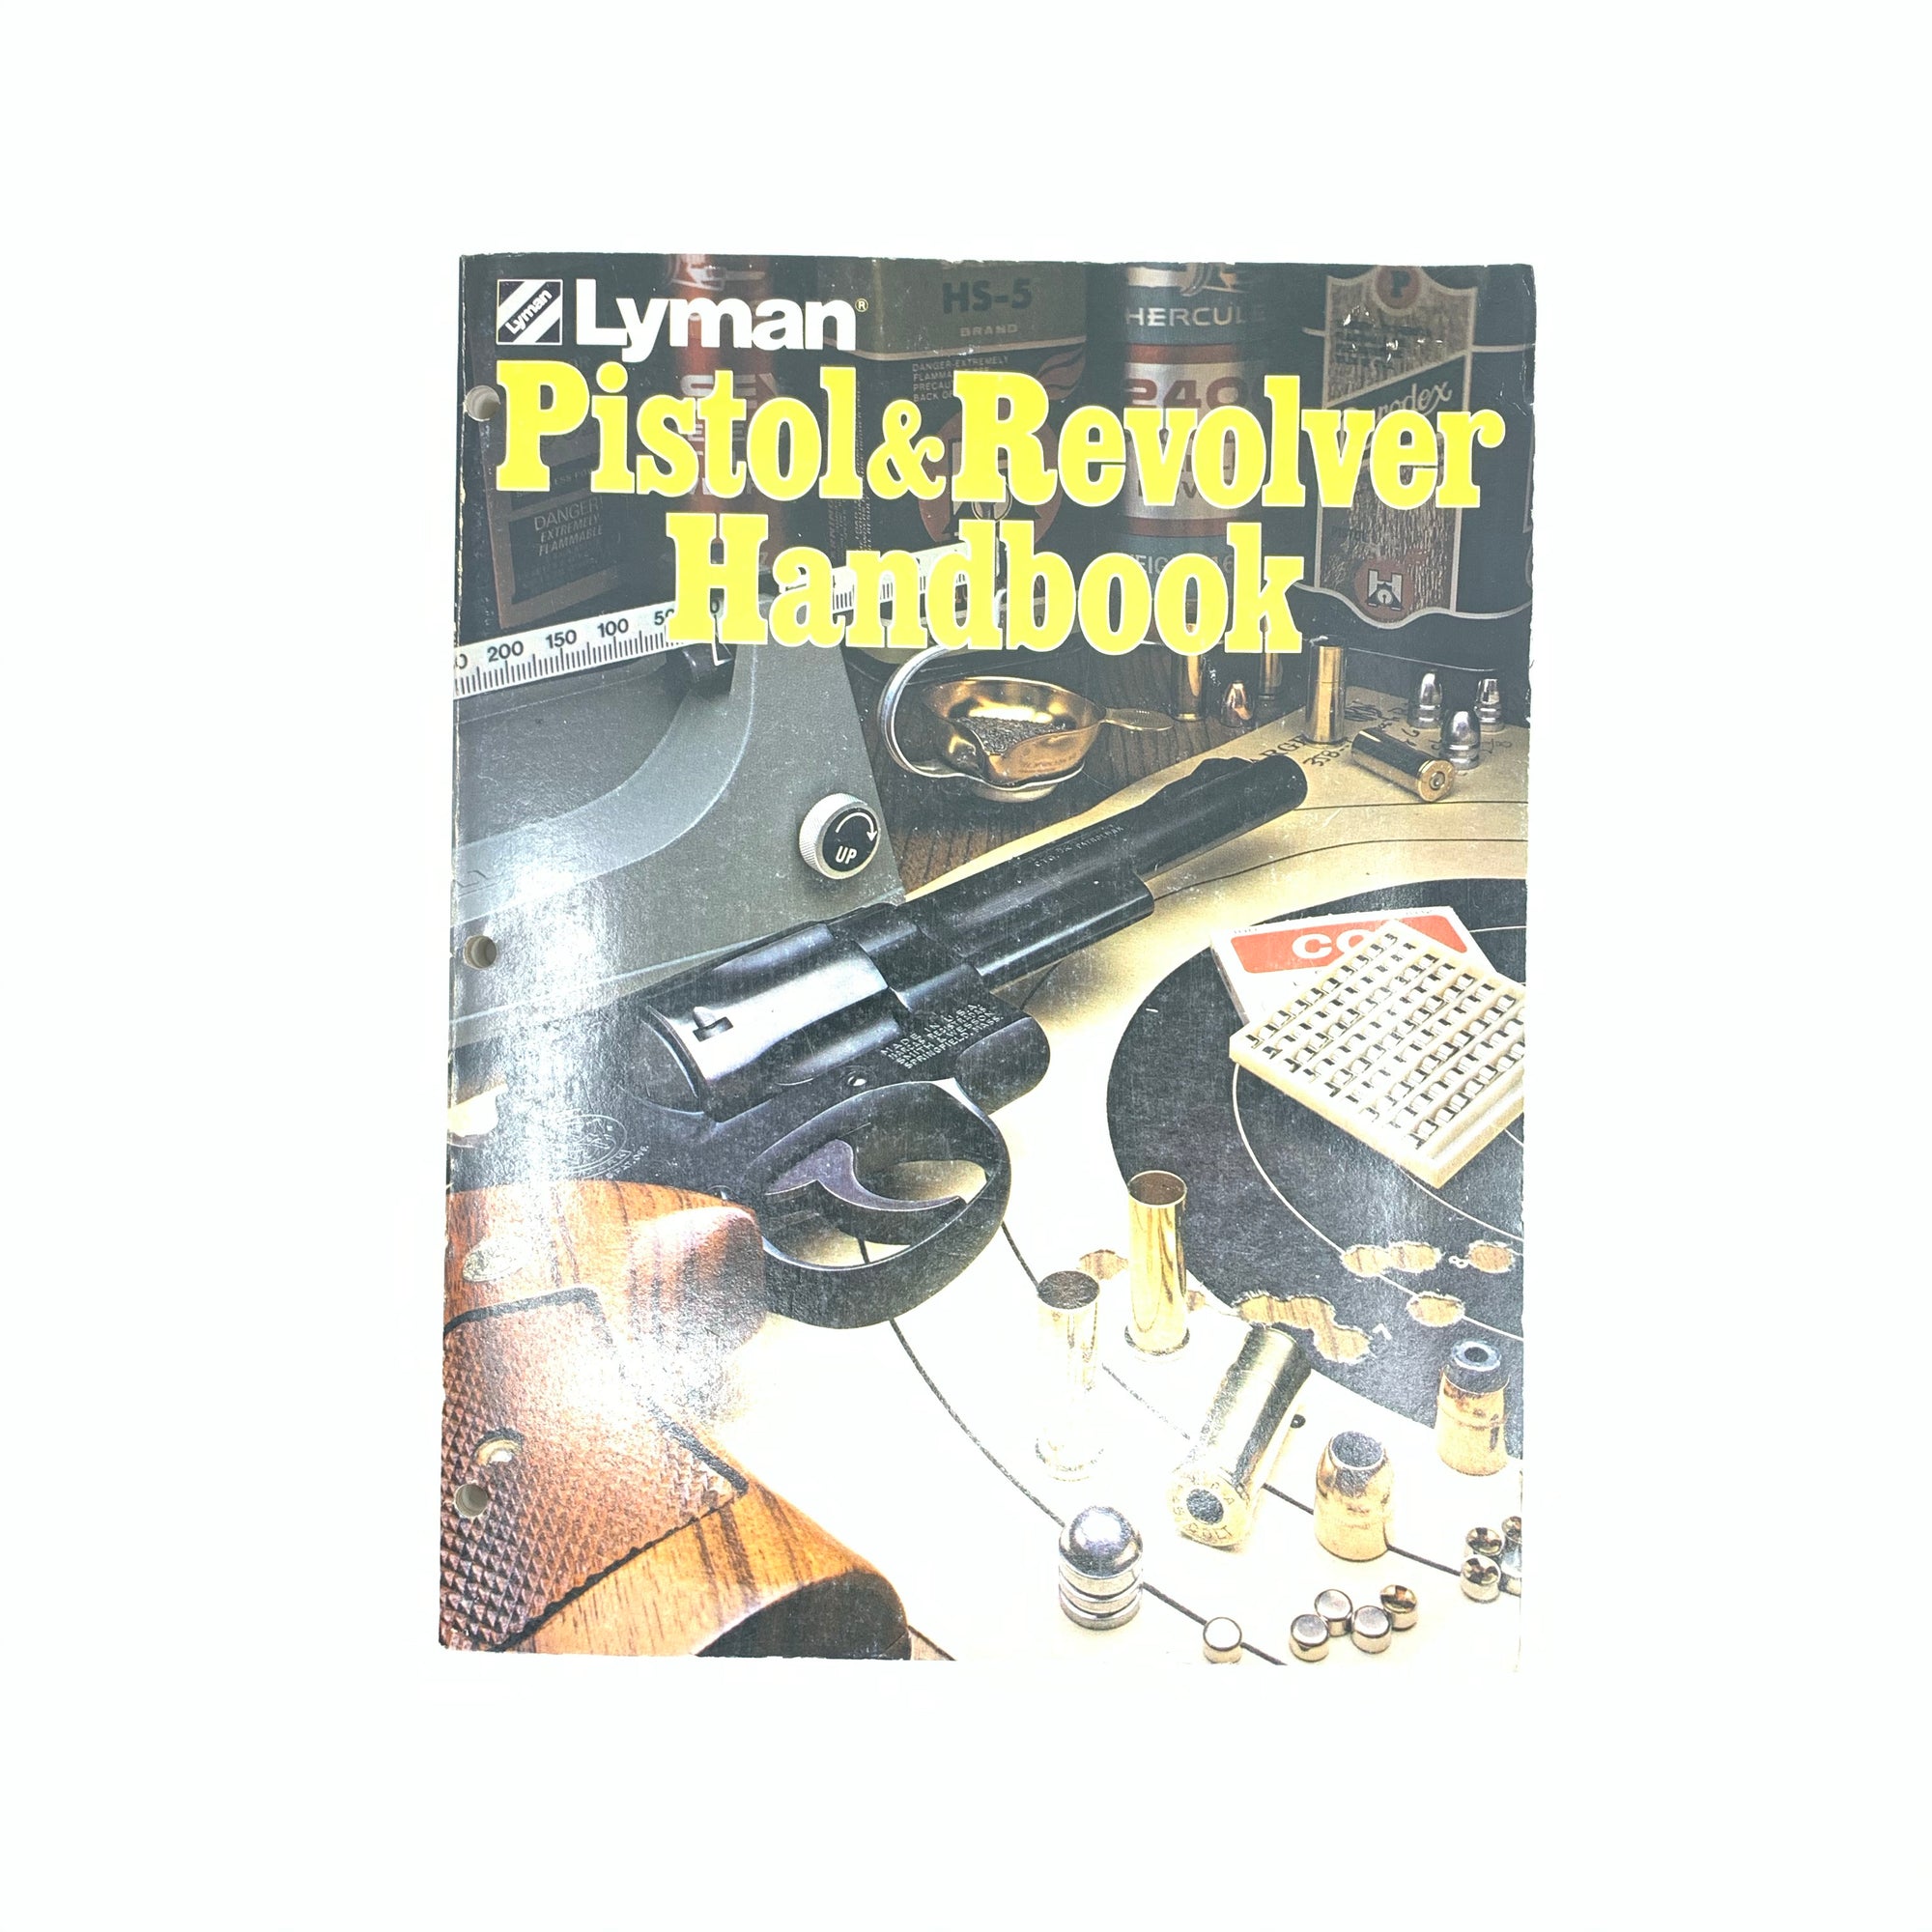 Lyman Pistol & Revolver Handbook SB 280 pgs